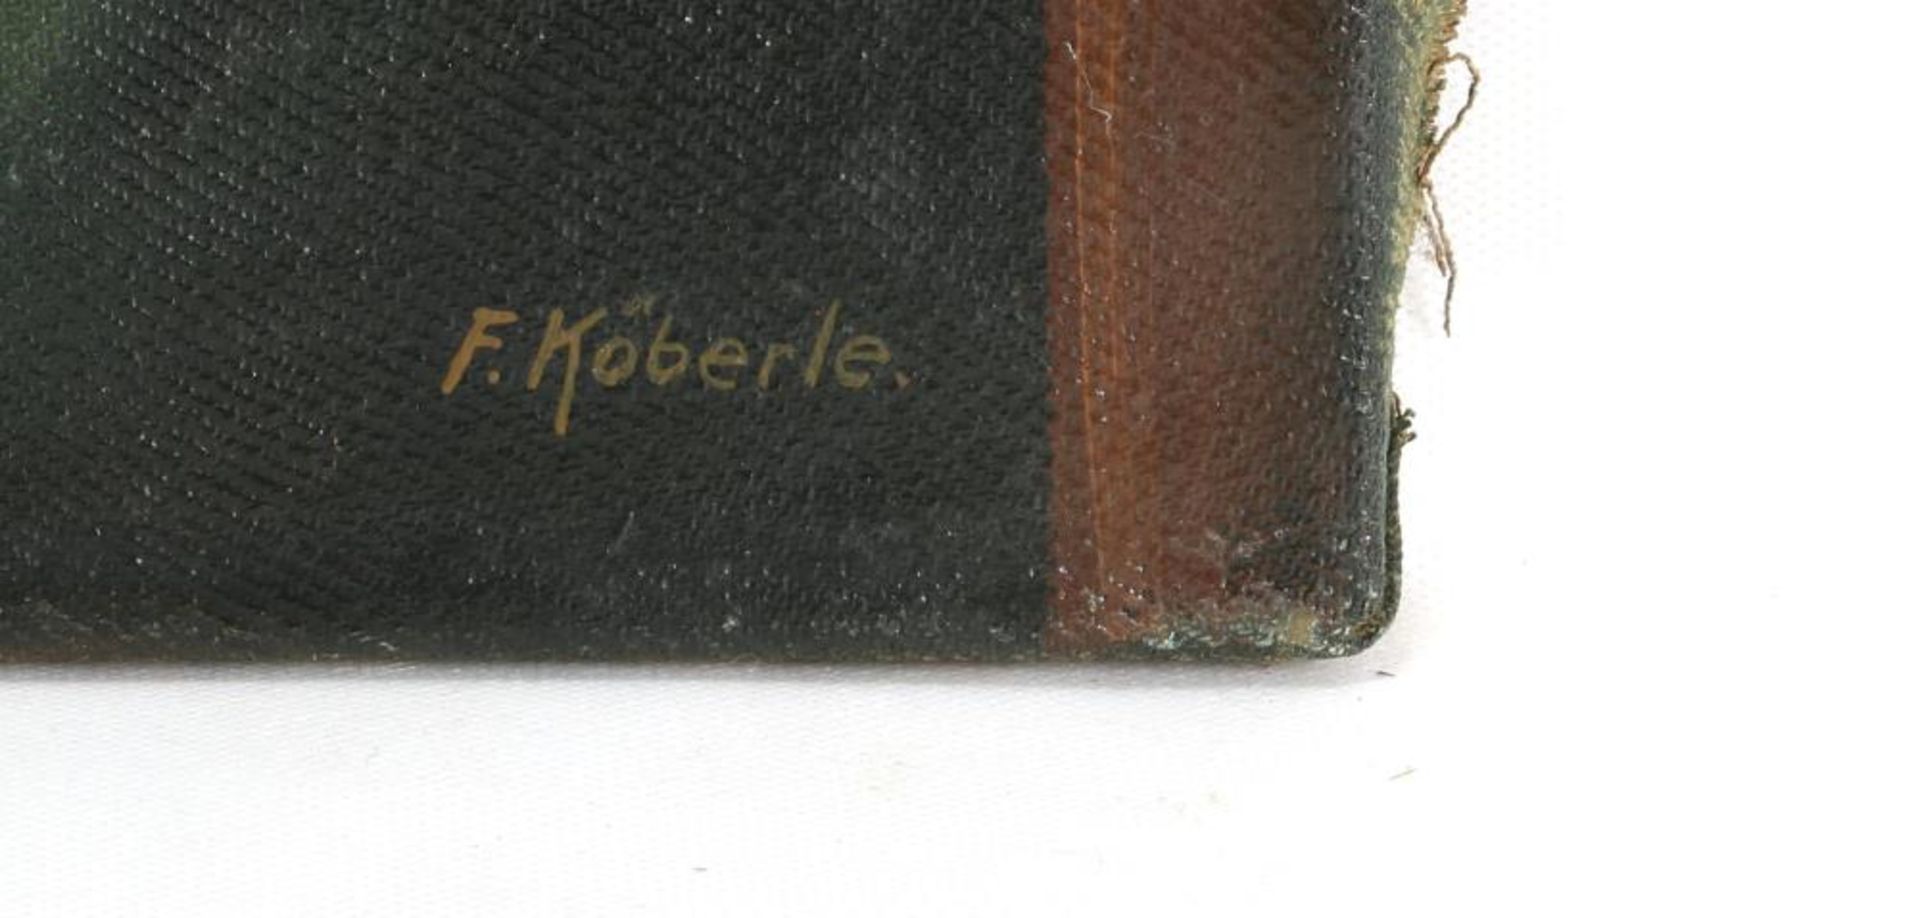 Die Würfelspieler. F. Köberle nach 1900. Im Altmeisterstil gemalte Interieurszene mit - Bild 2 aus 3